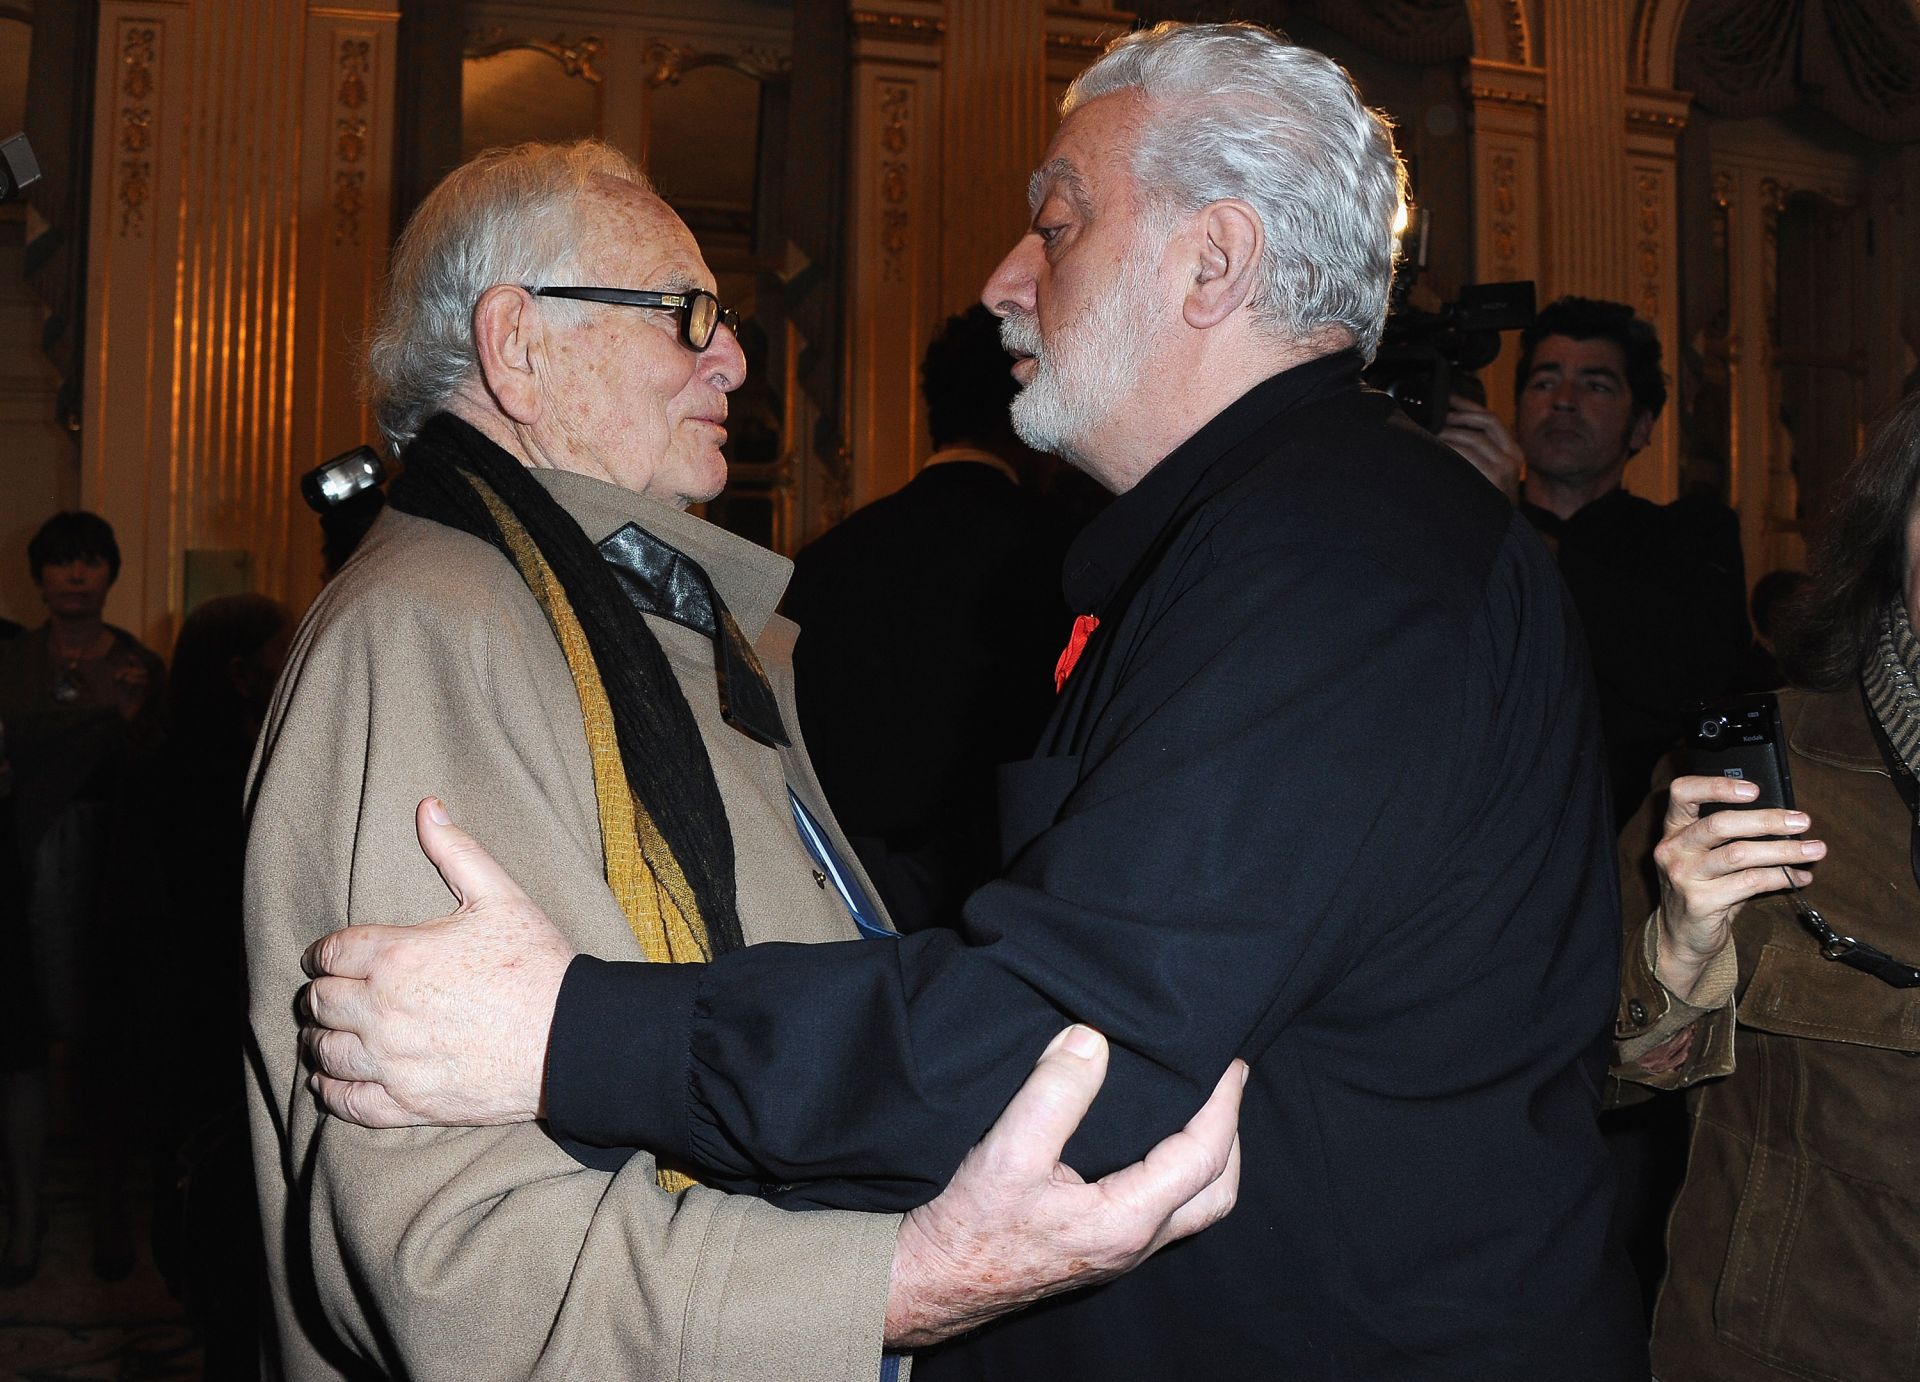 16 ноември 2010 г. - Пиер Карден се поздравява с Пако Рабан (вдясно) във френското Министерство на културата, след като двамата са удостоени със знака на Почетния легион